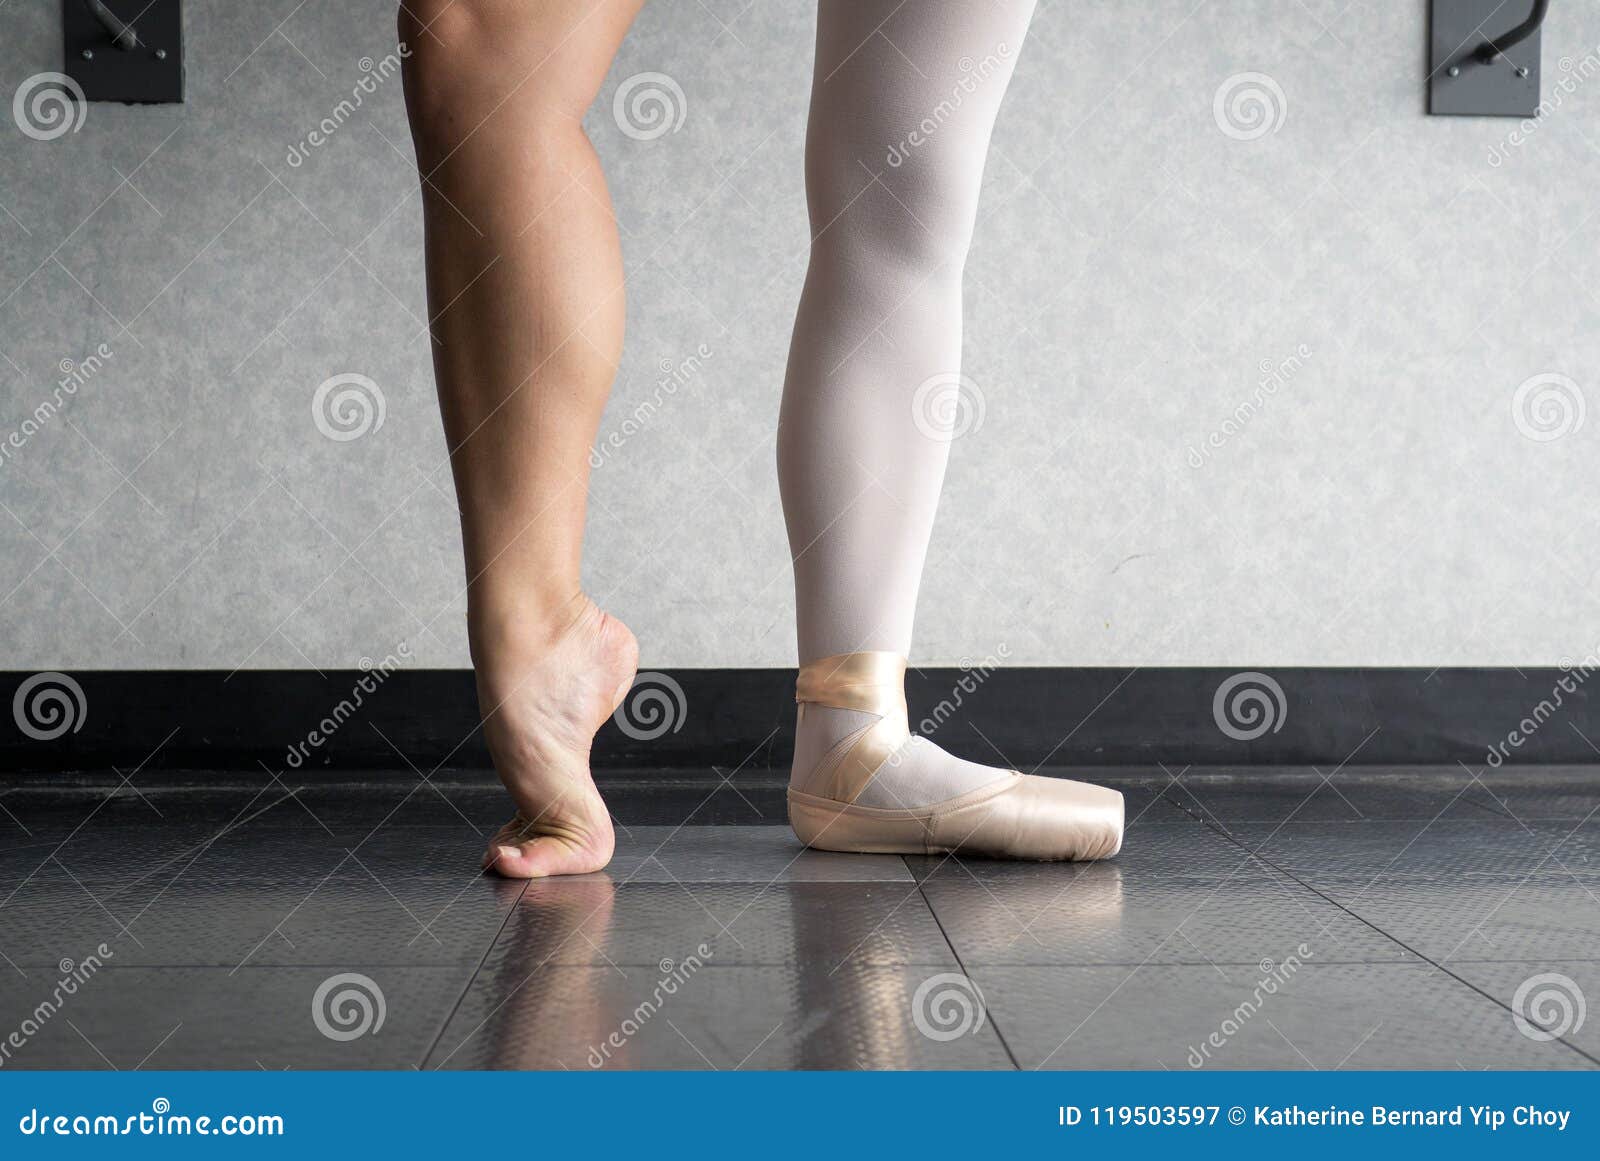 hard ballet shoes